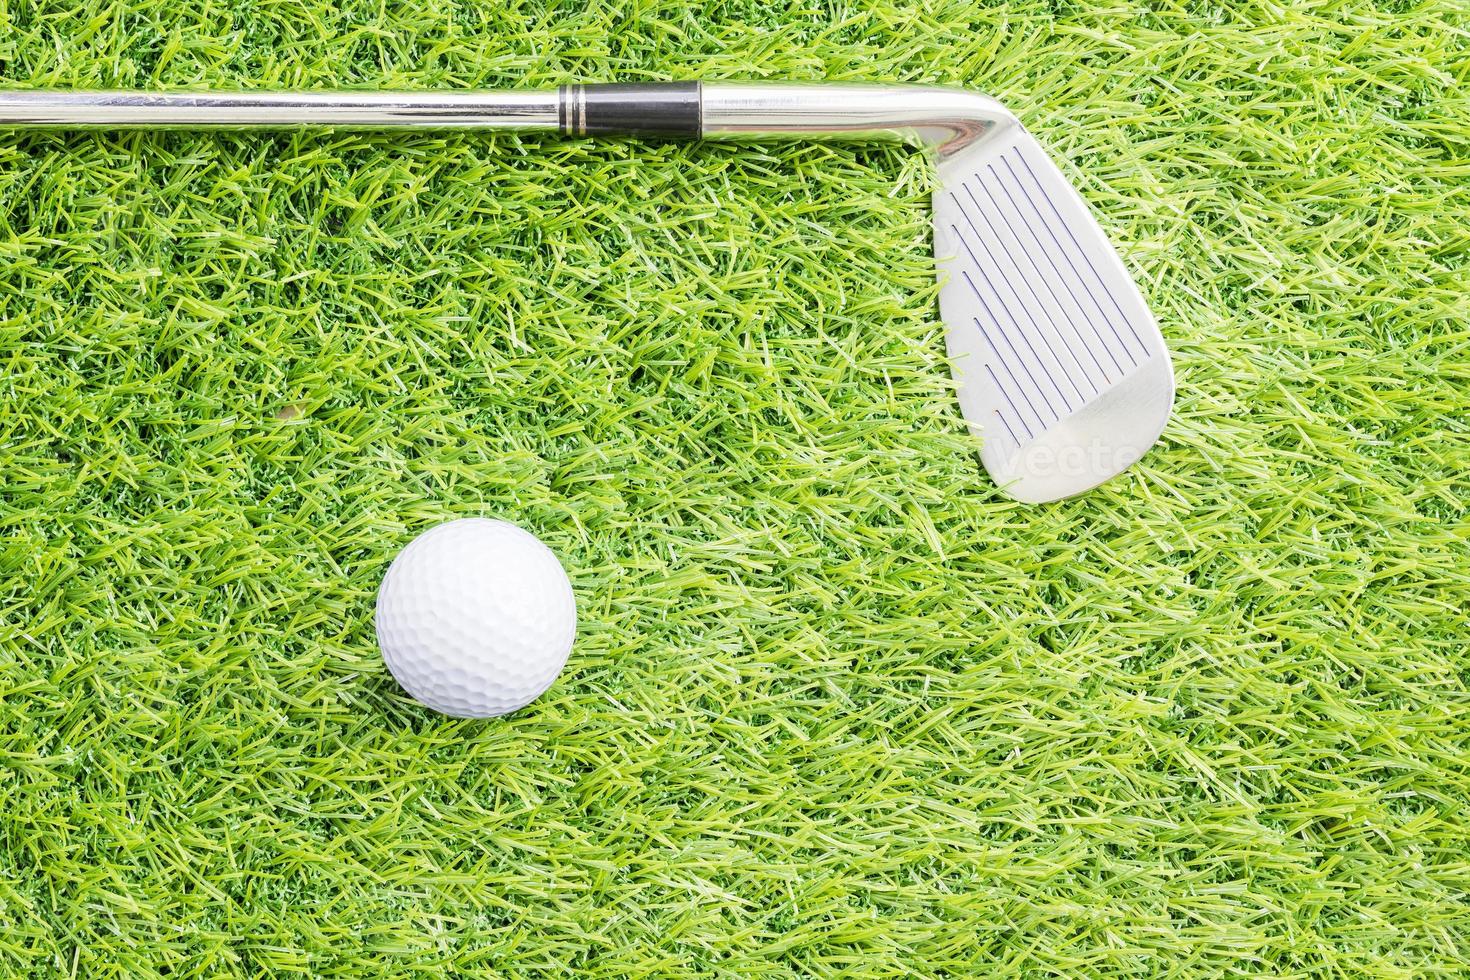 Sportobjekt im Zusammenhang mit Golfausrüstung foto